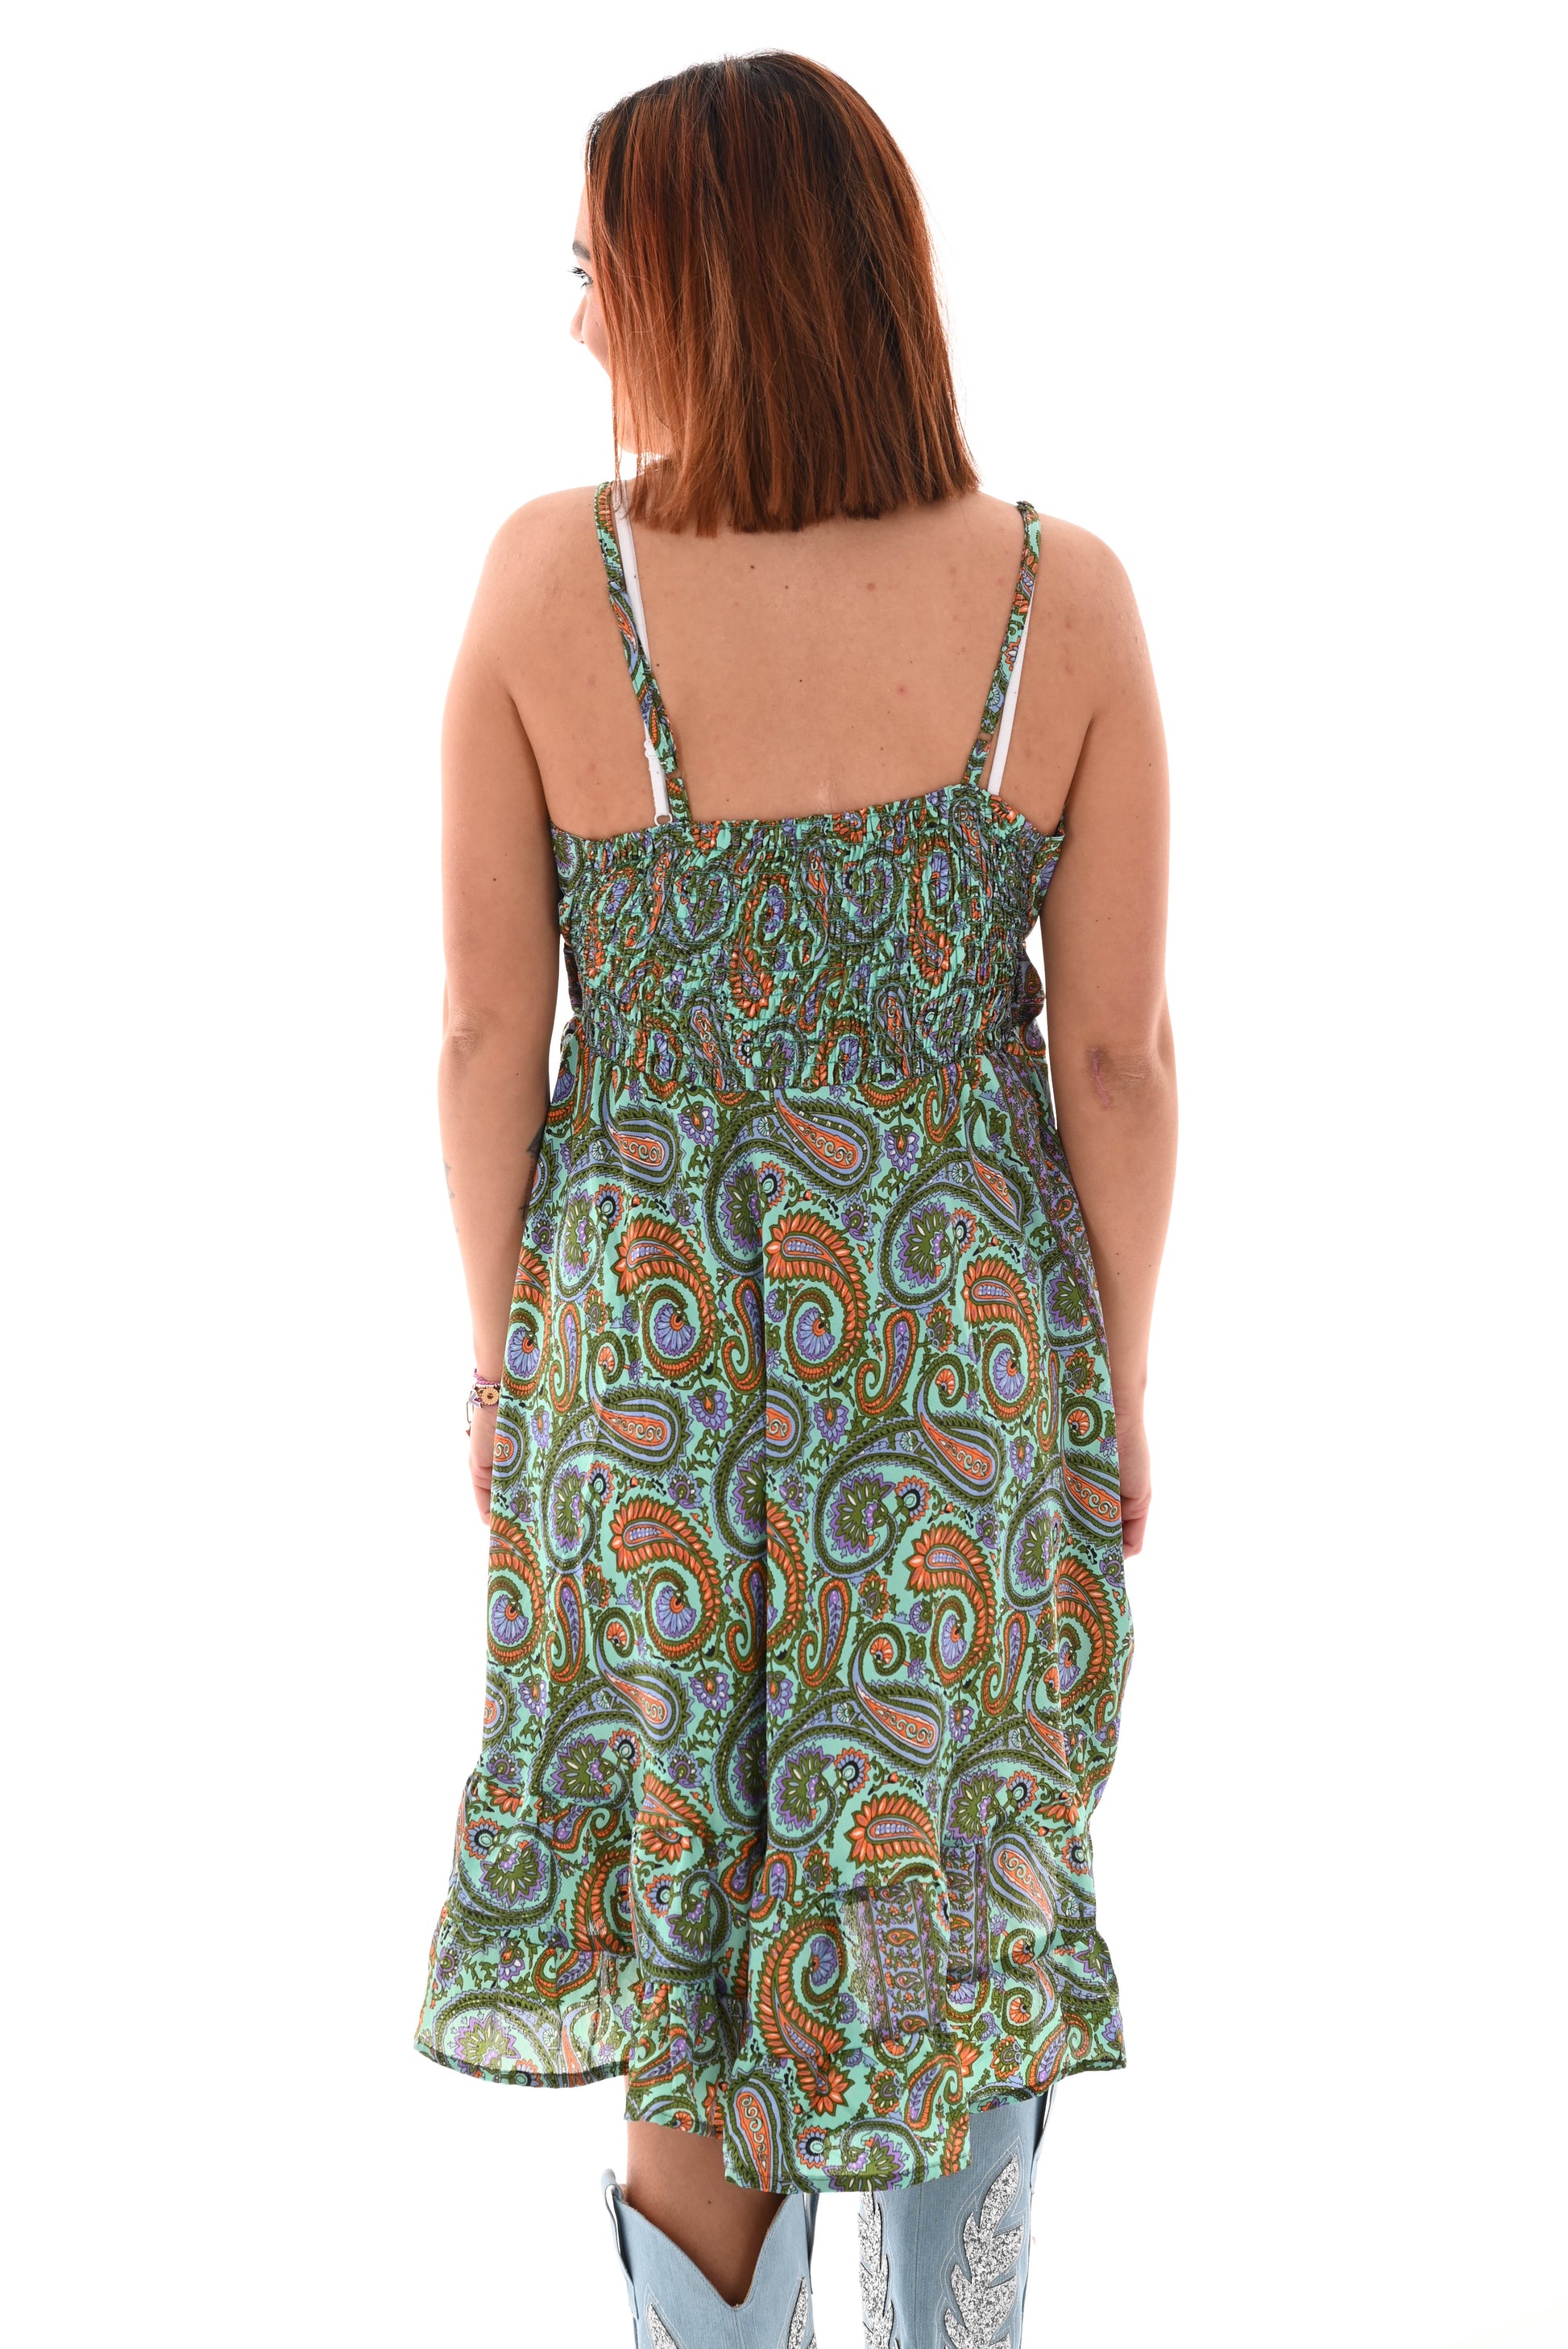 Korte jurk spaghetti bandjes paisley print turquoise/paars